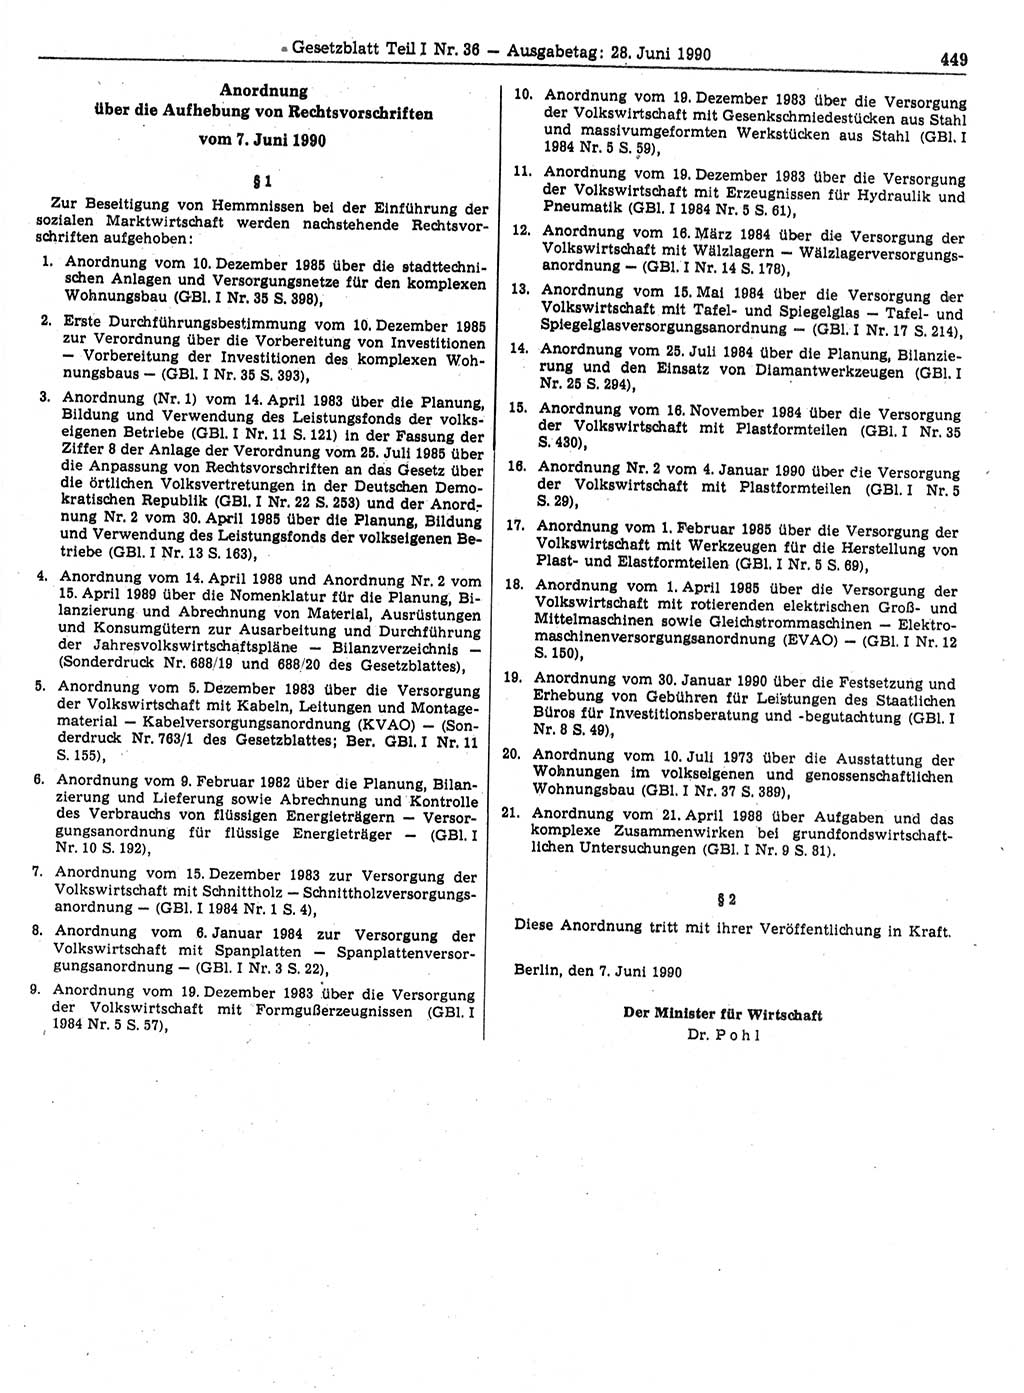 Gesetzblatt (GBl.) der Deutschen Demokratischen Republik (DDR) Teil Ⅰ 1990, Seite 449 (GBl. DDR Ⅰ 1990, S. 449)